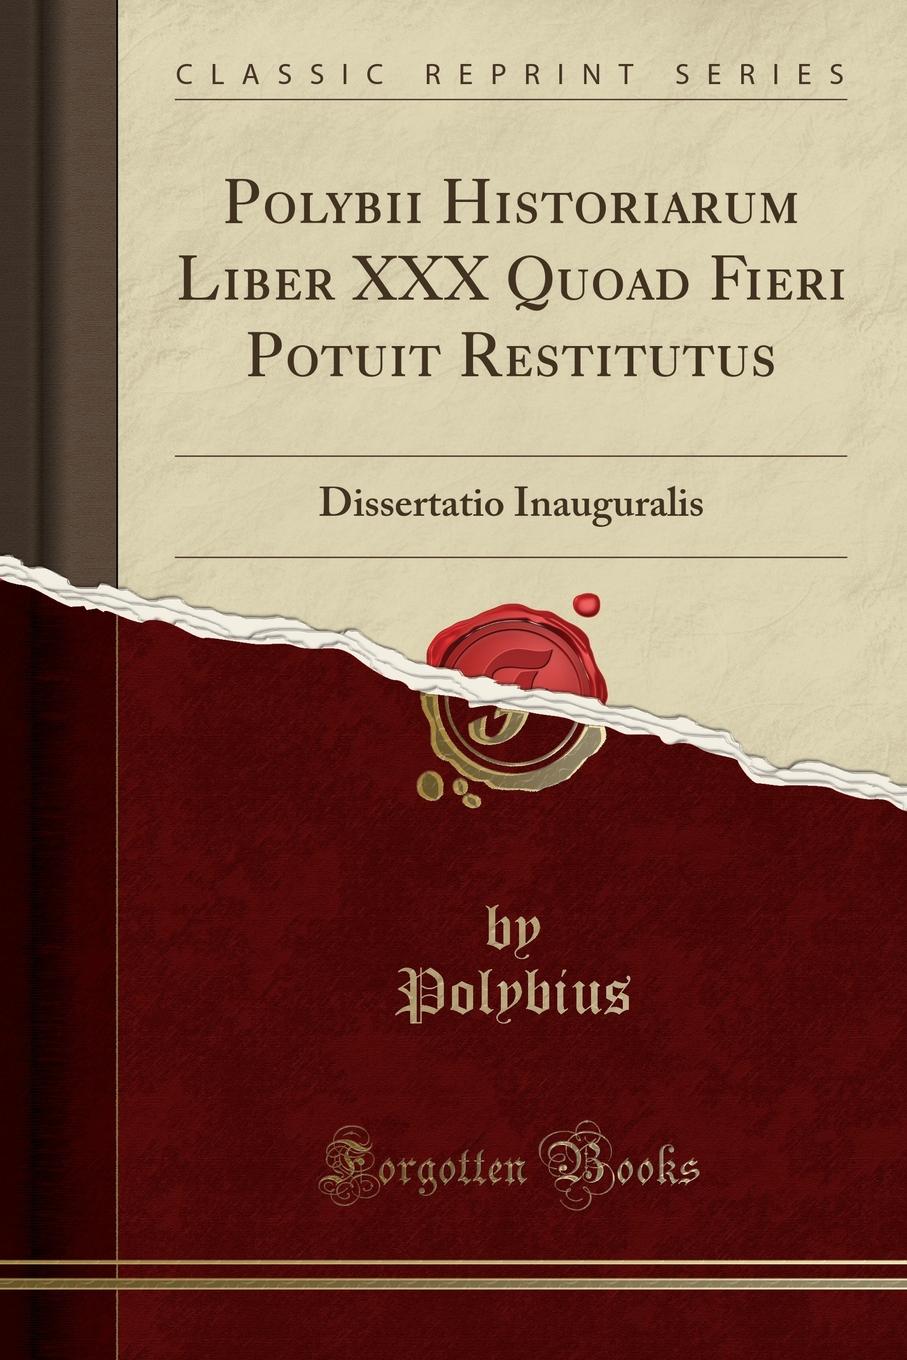 Polybii Historiarum Liber XXX Quoad Fieri Potuit Restitutus. Dissertatio Inauguralis (Classic Reprint)